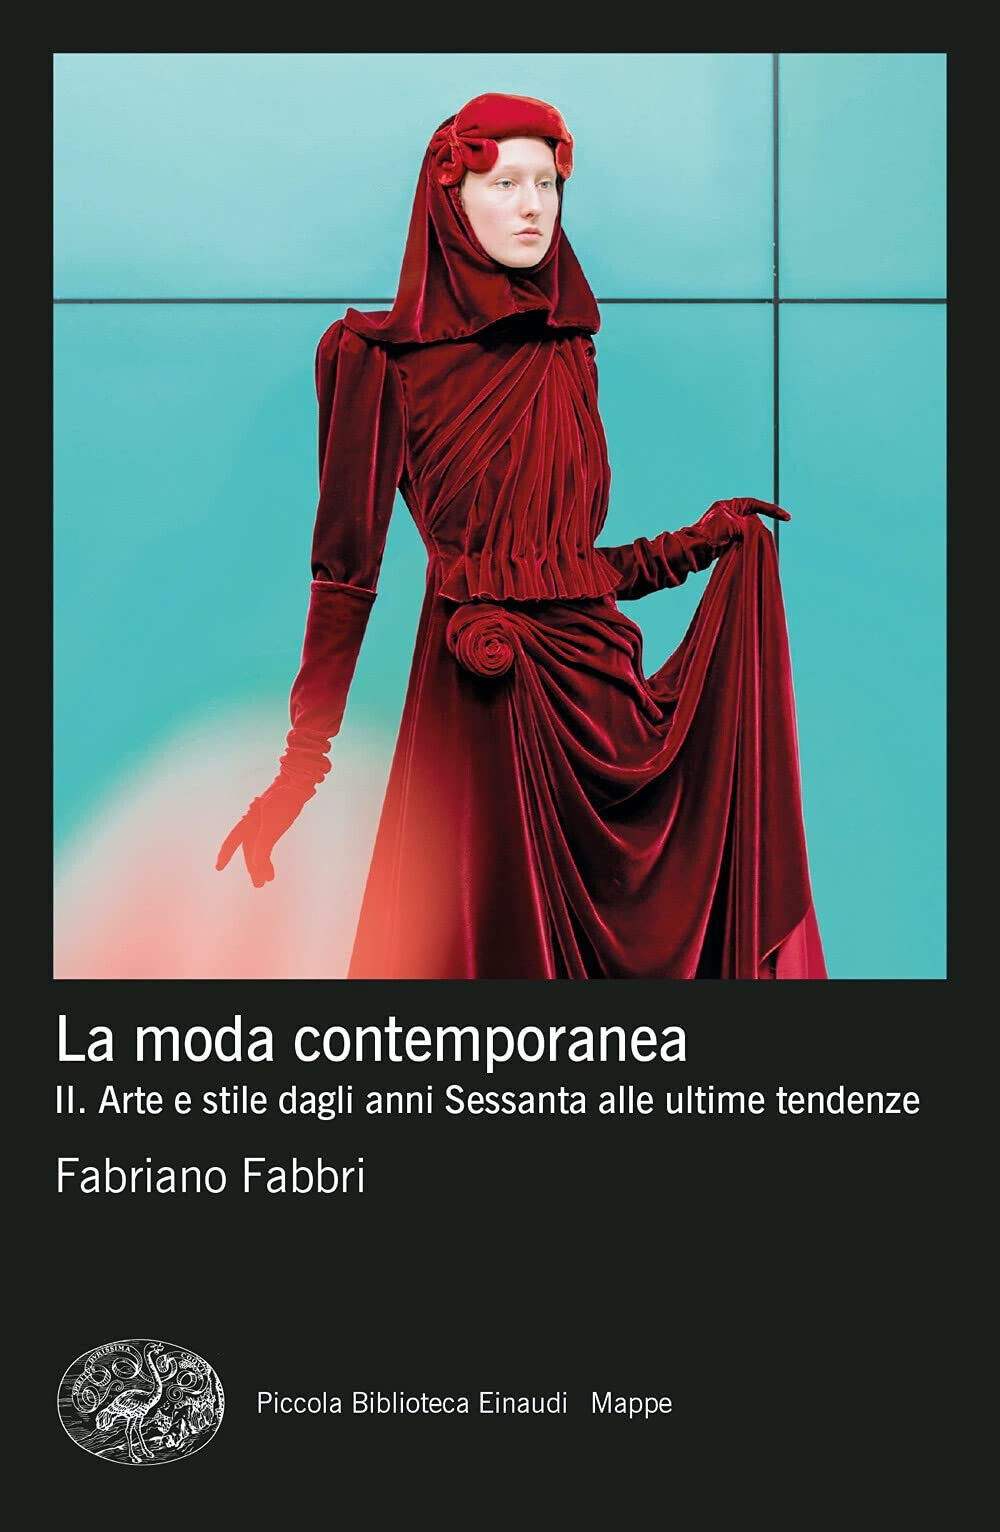 La moda contemporanea vol.2 - Fabriano Fabbri - Einaudi, 2022